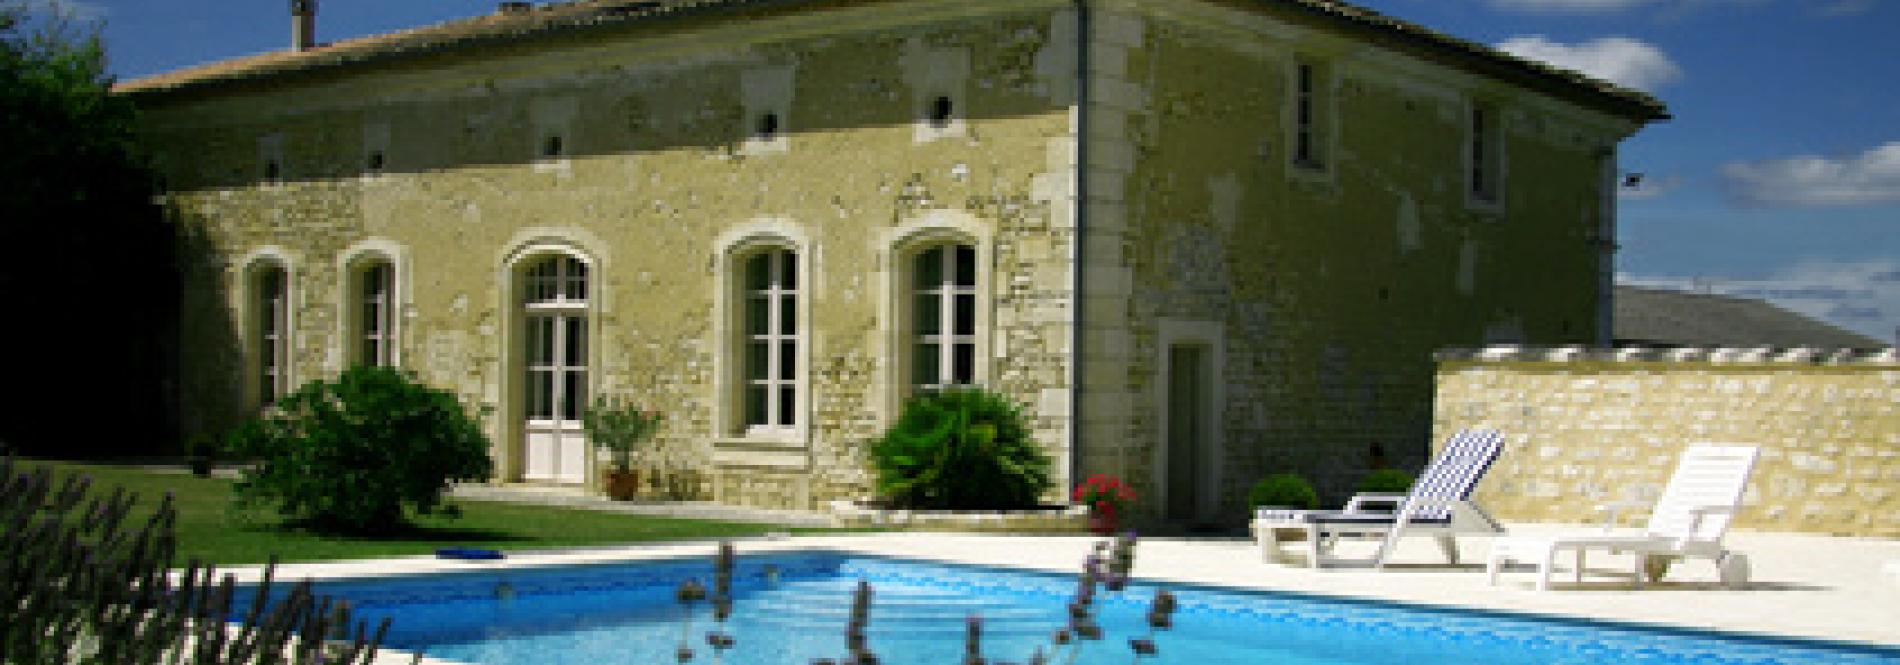 Acheter une villa dans le Var – conseils et infos – Agence immobilière Six Fours